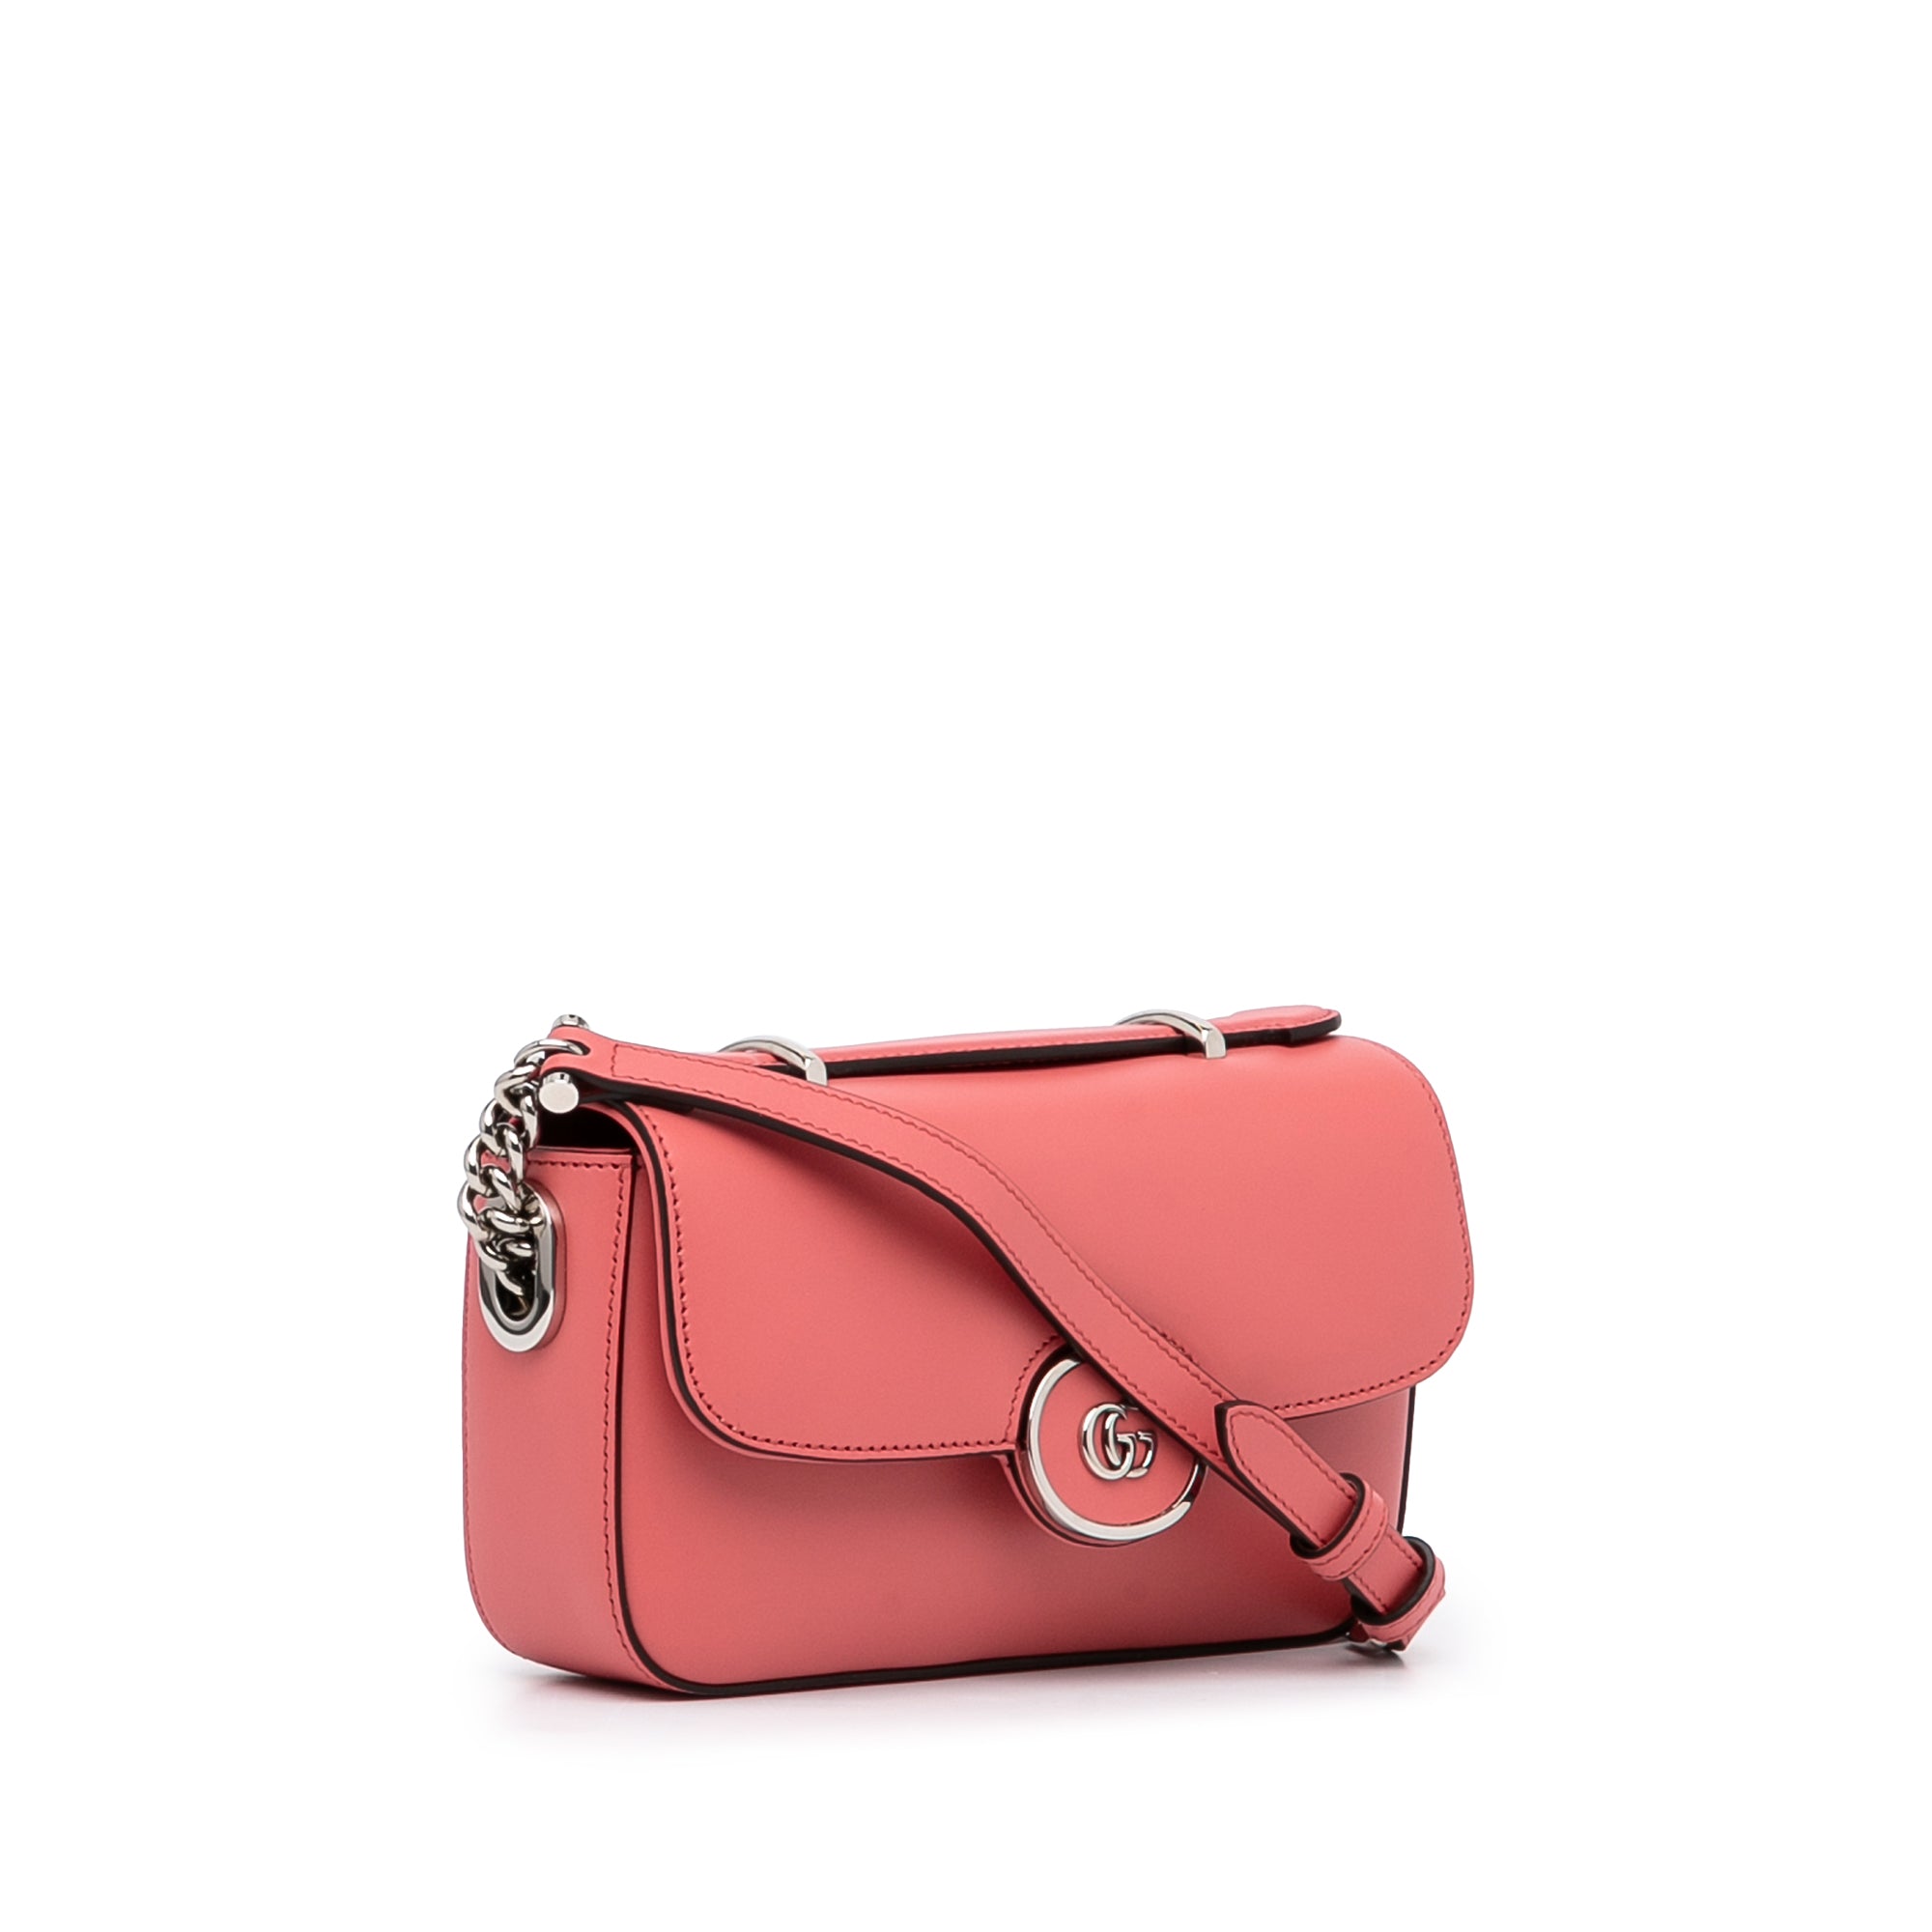 Petite GG mini shoulder bag pink